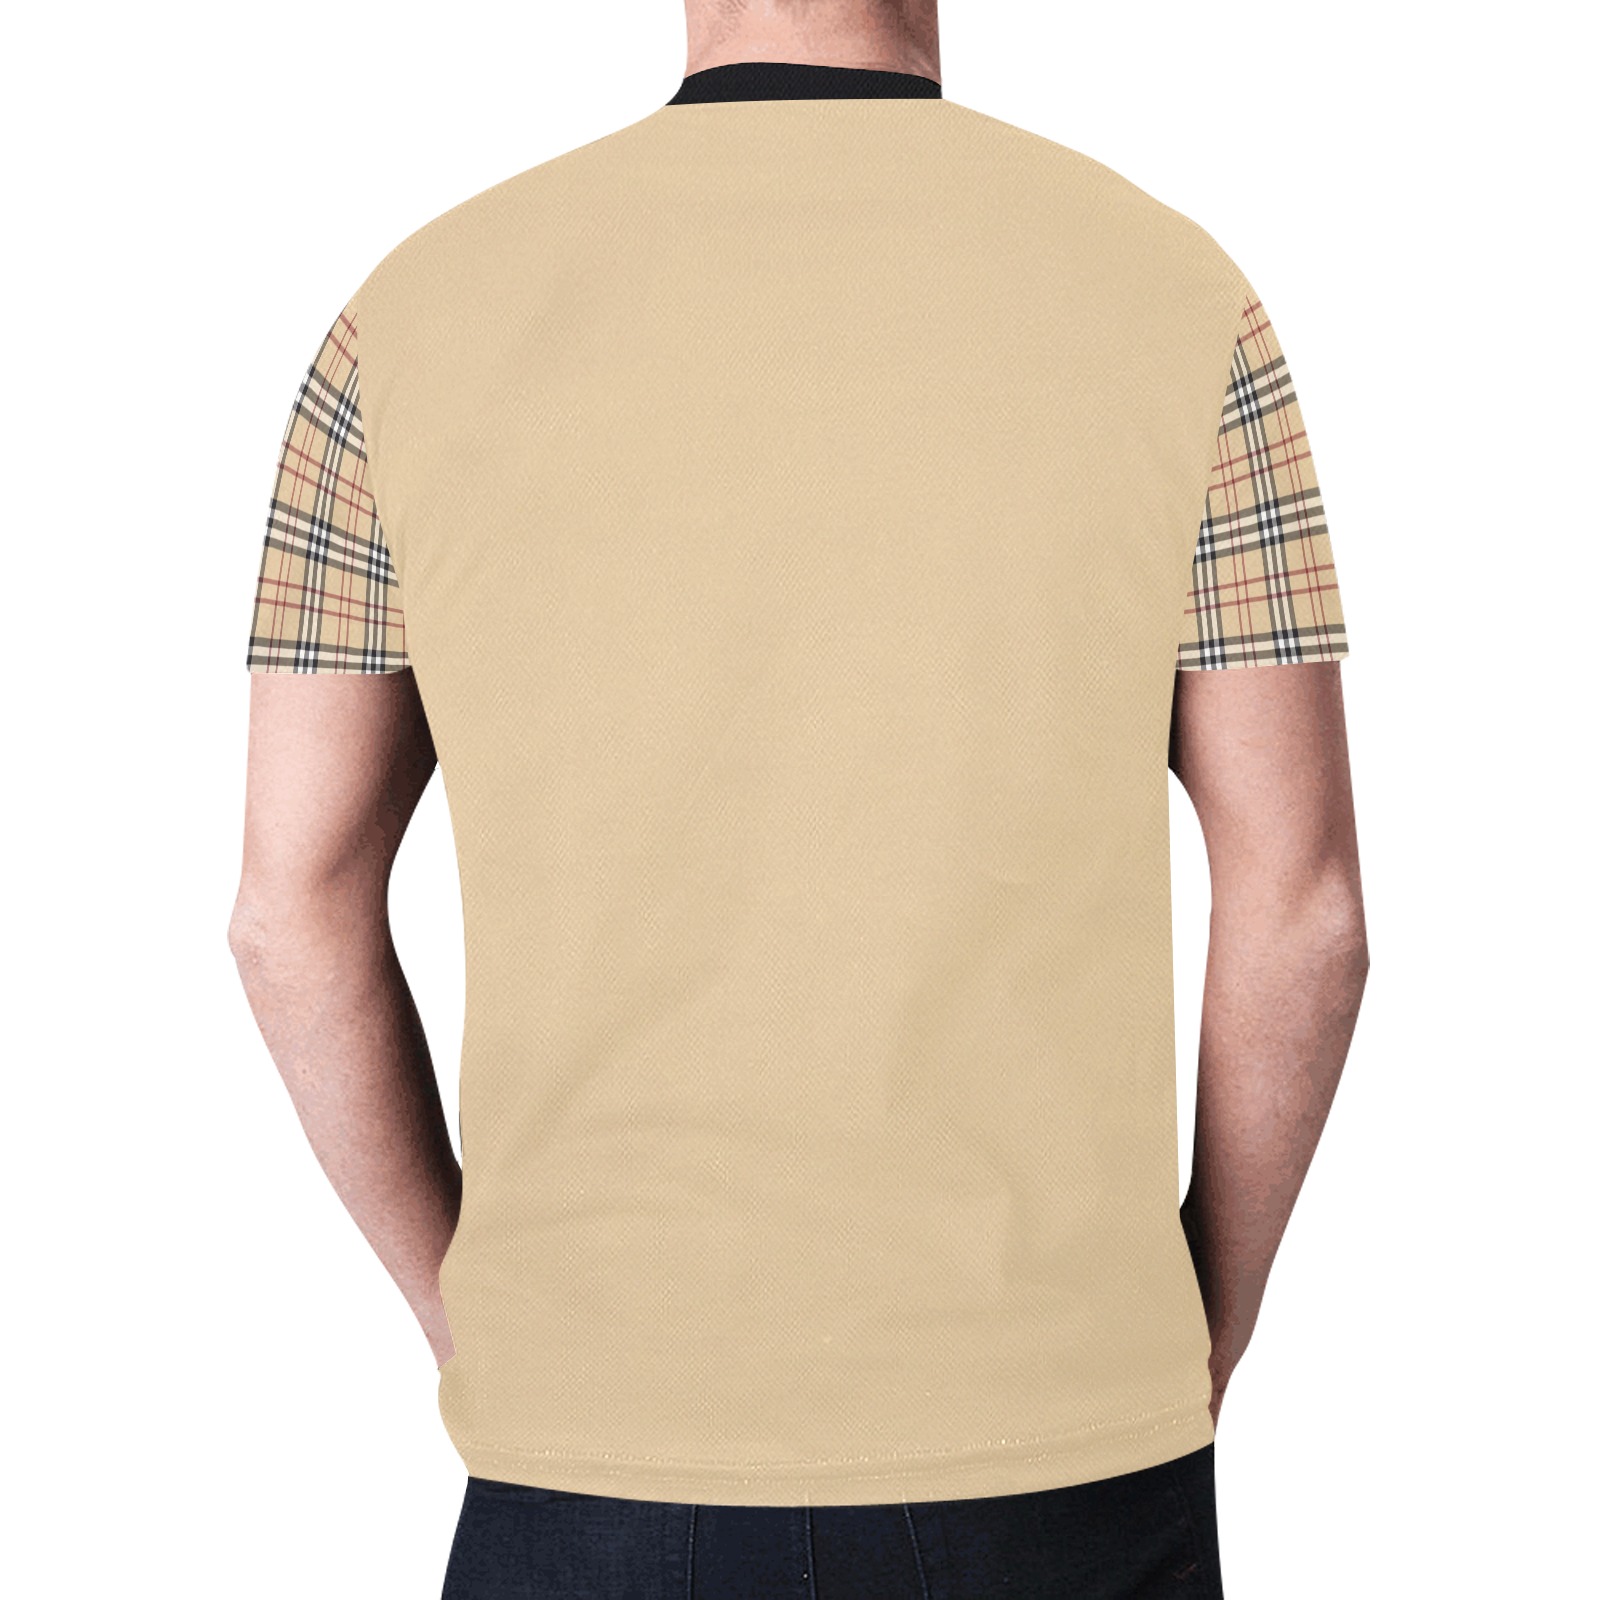 crx hustler New All Over Print T-shirt for Men (Model T45)